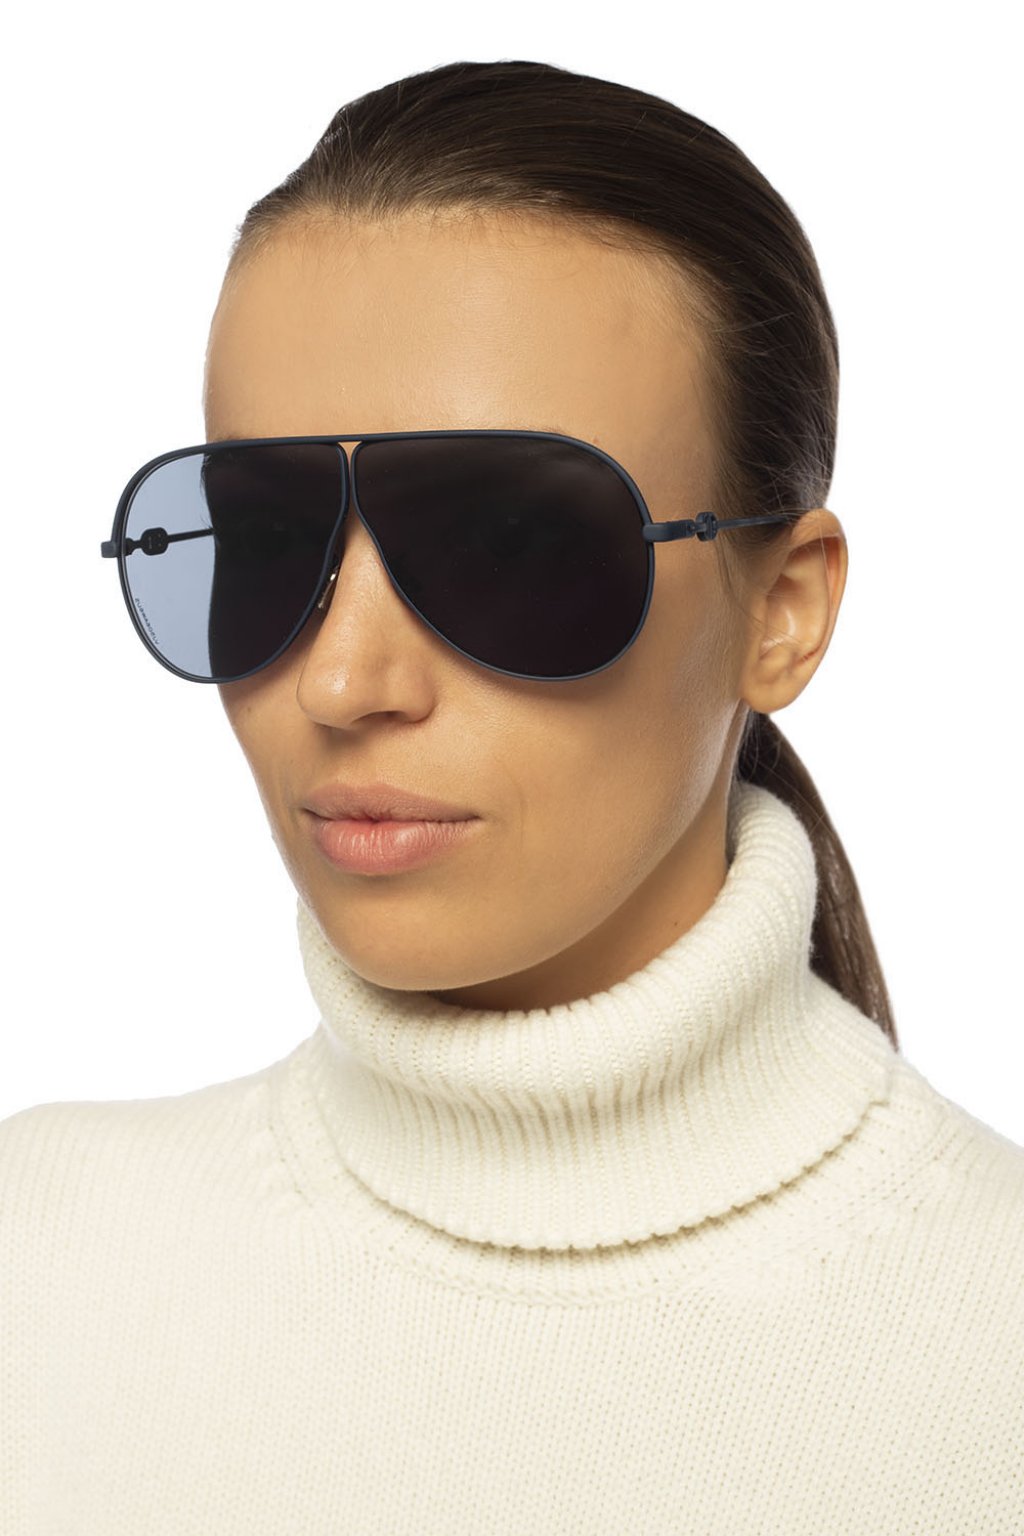 Buy Christian Dior Camp WOMENS Sunglasses DIORCAMPS32K Ashfordcom